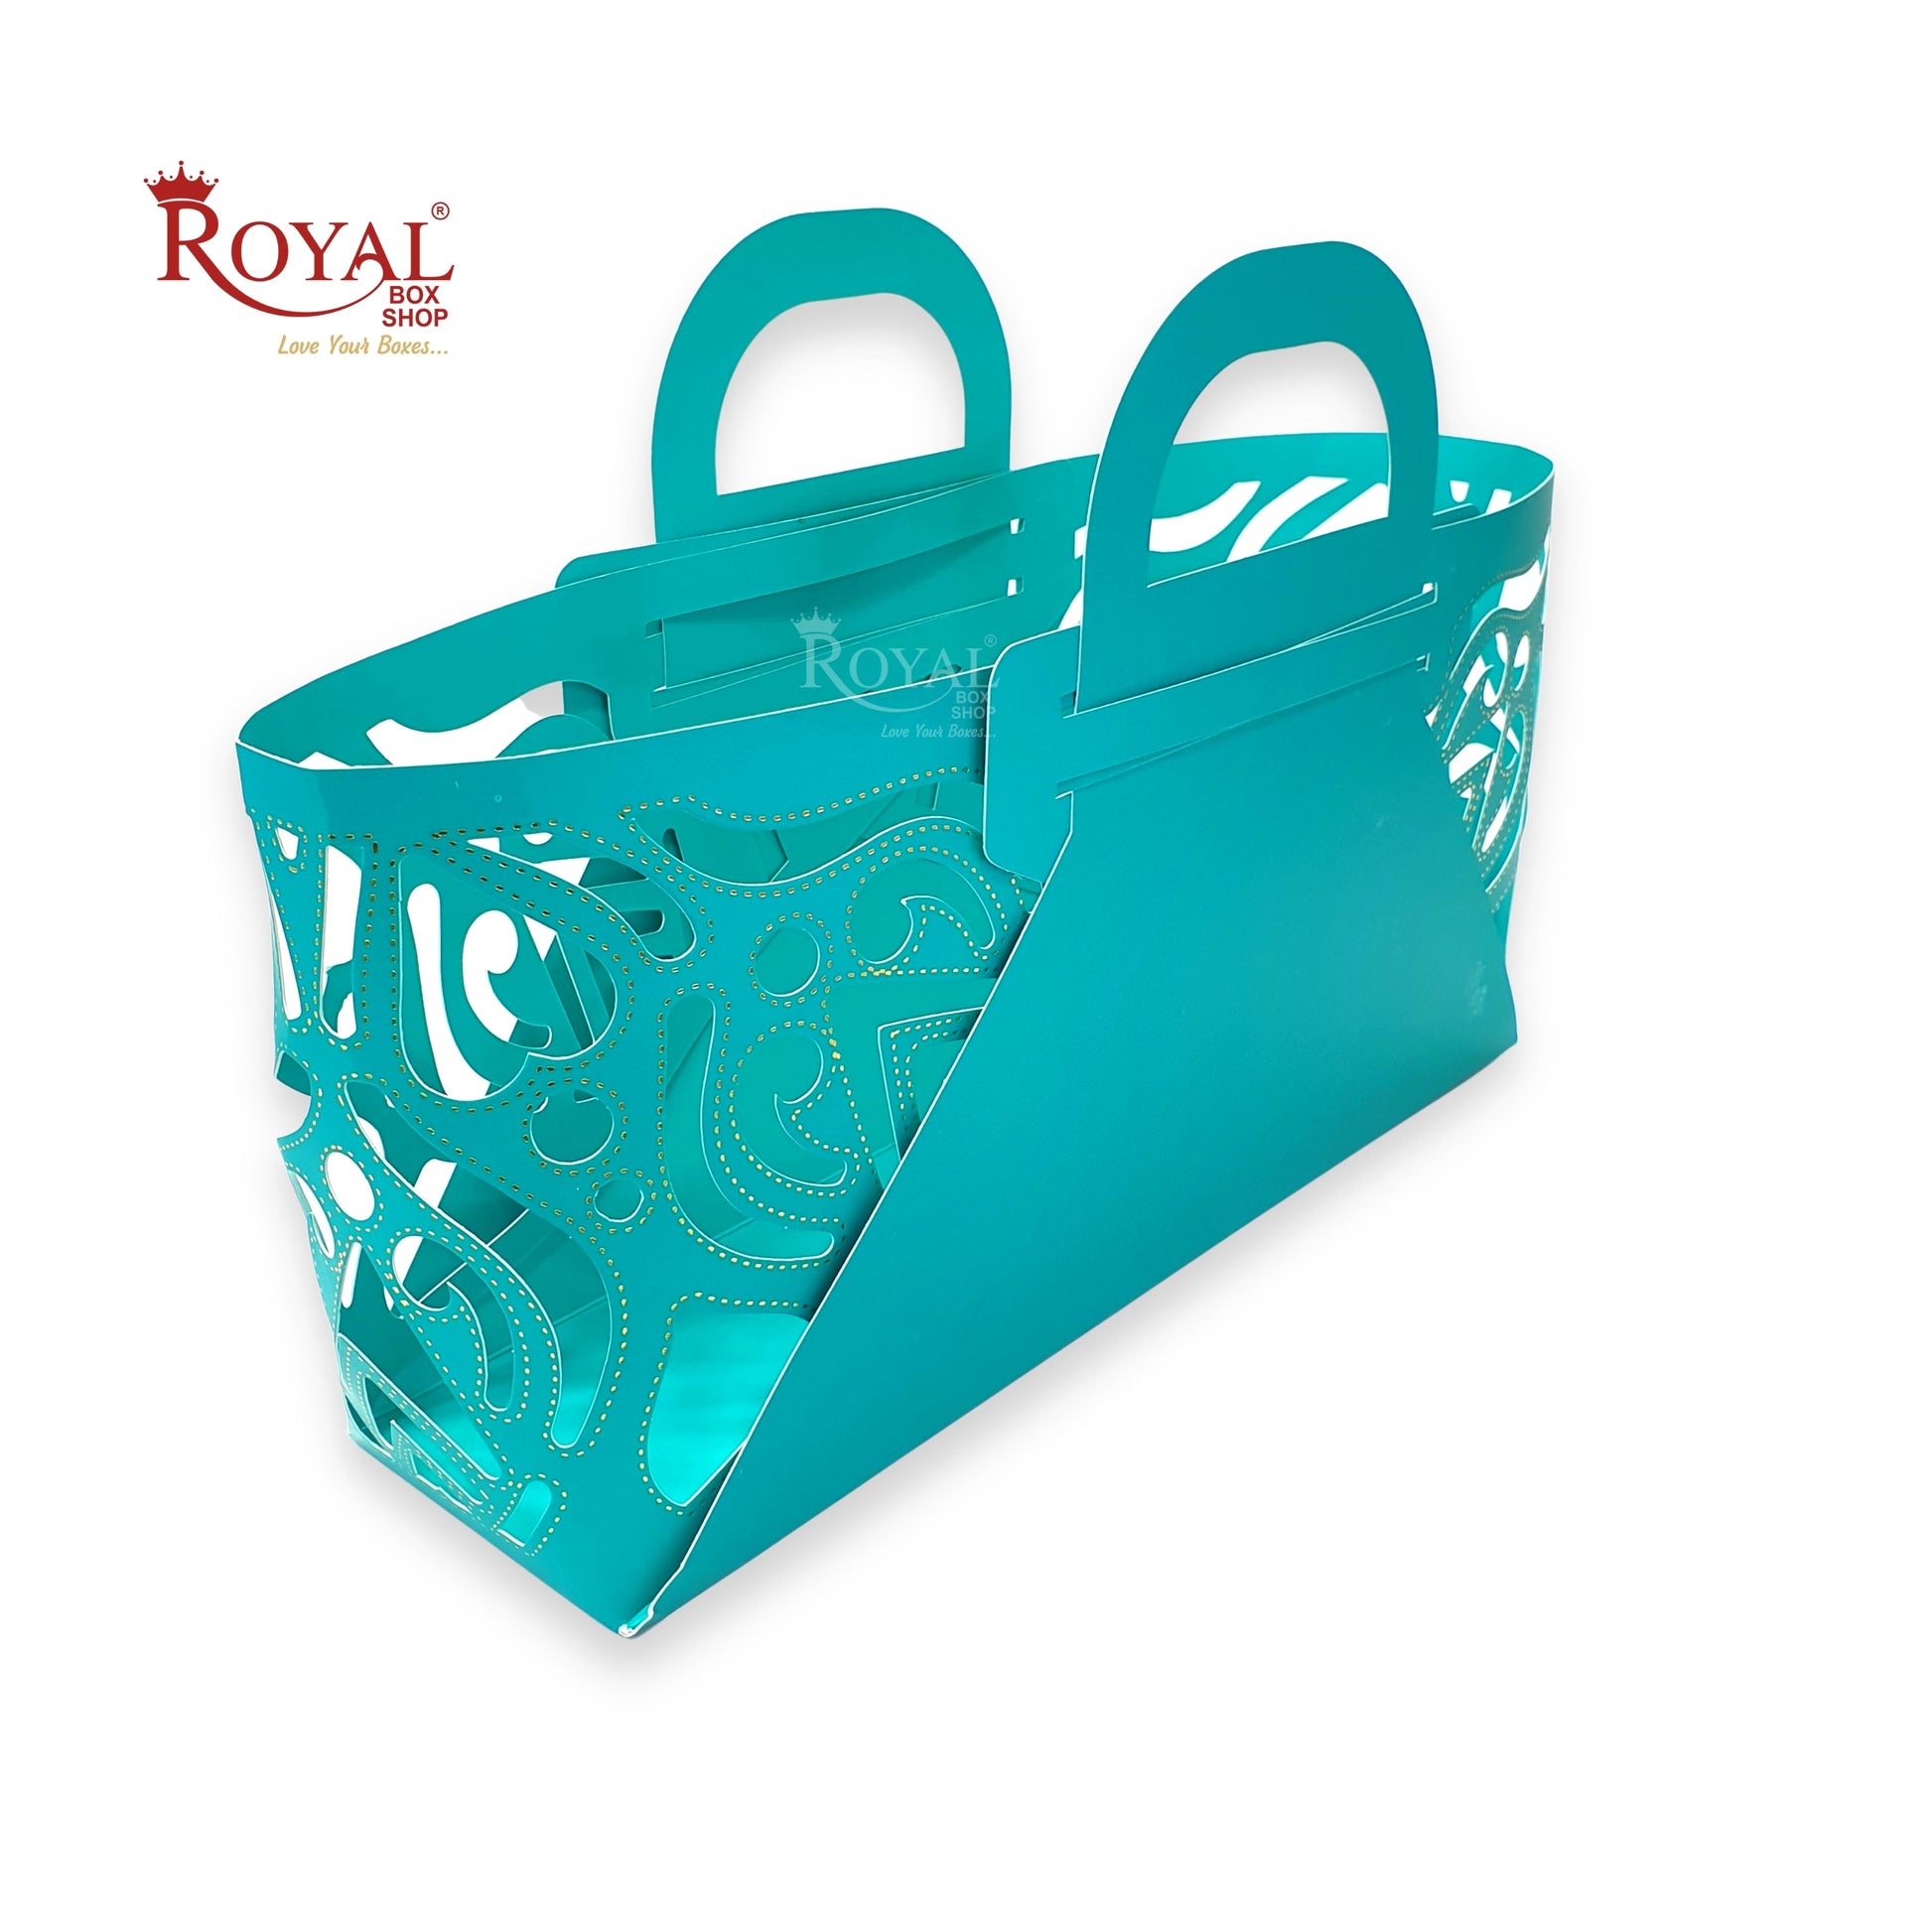 Royal 4 Jar Gift Hamper Bags I Laser Cut Gold Foiling I Blue Color I Wedding, Corporate Birthday Return  Gifting Hamper Bags Royal Box Shop